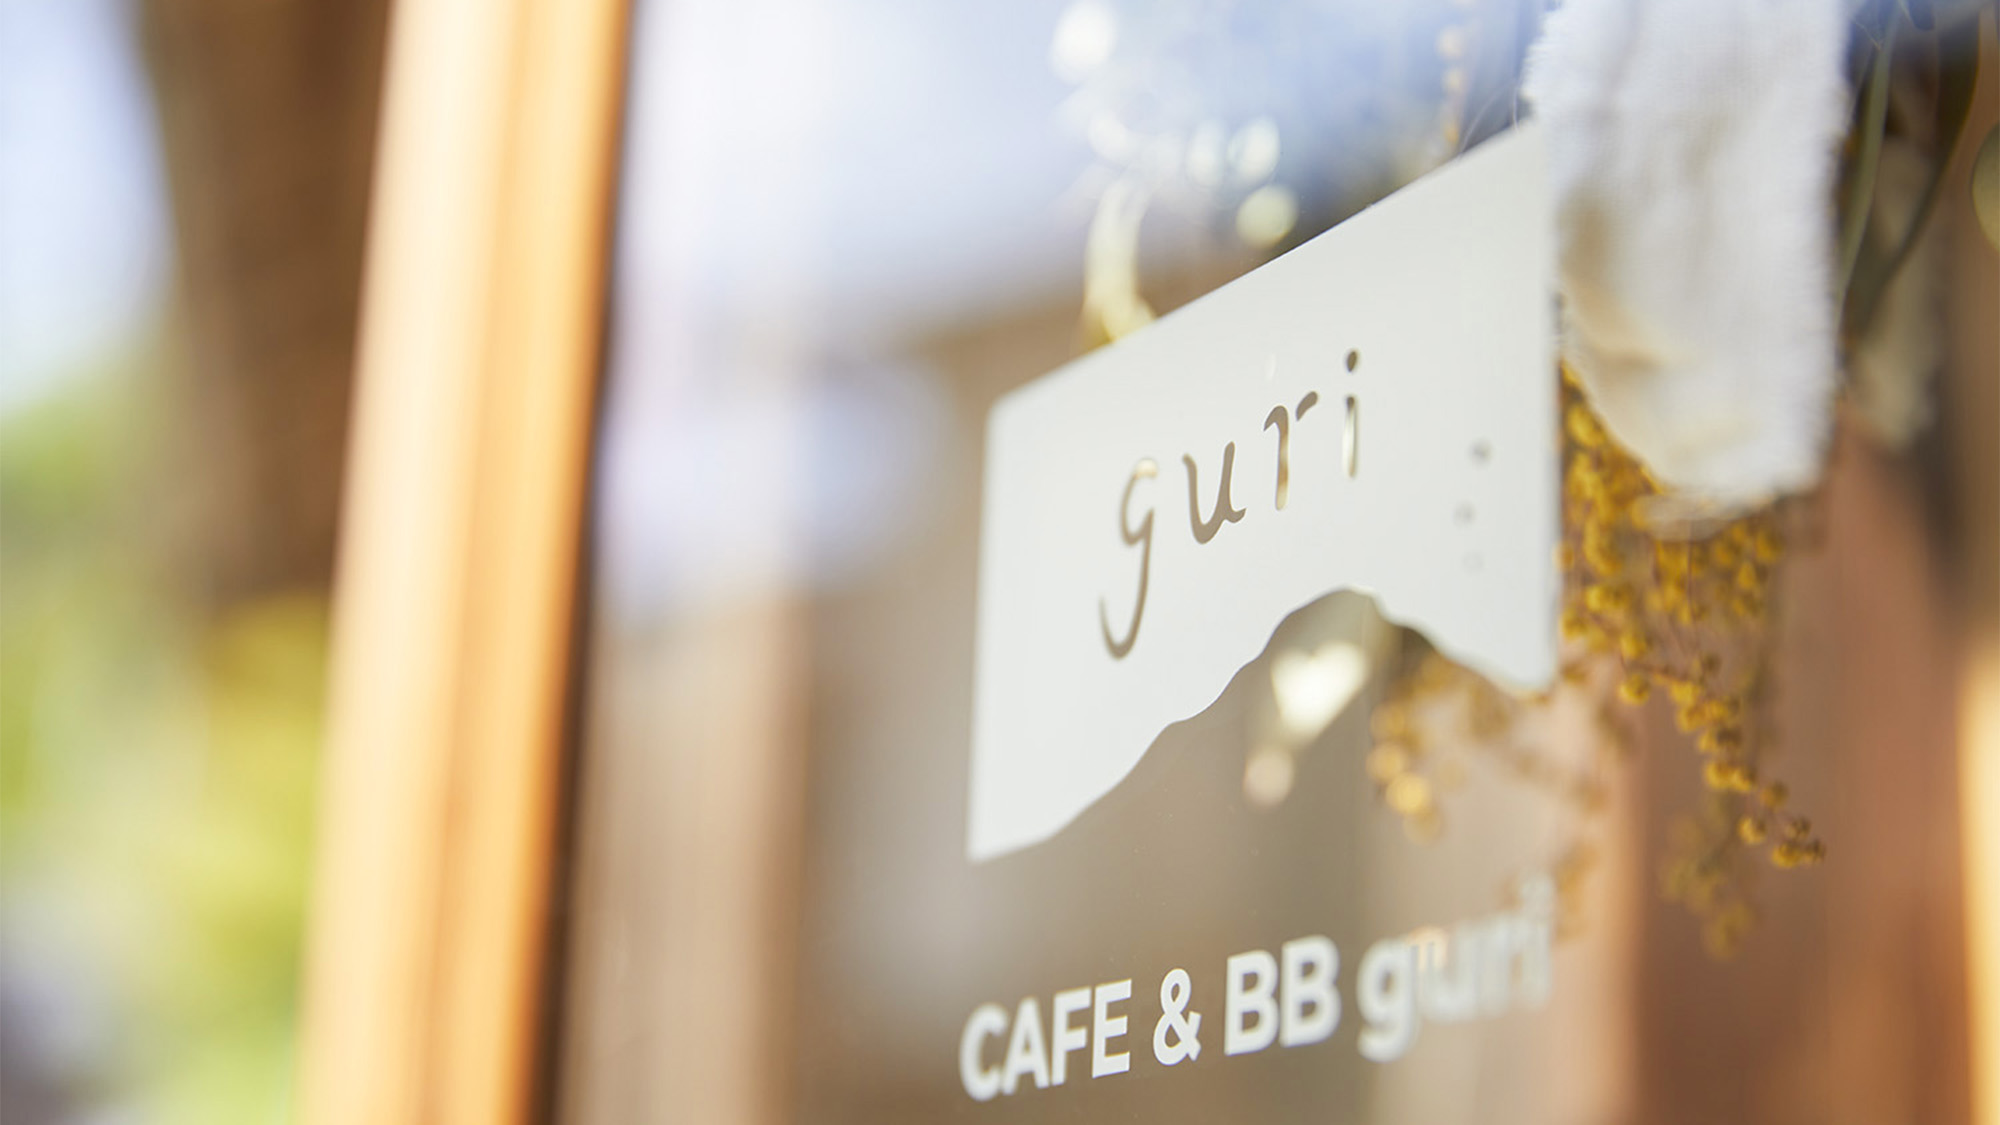 ・CAFE & BB guriの入口はこちら